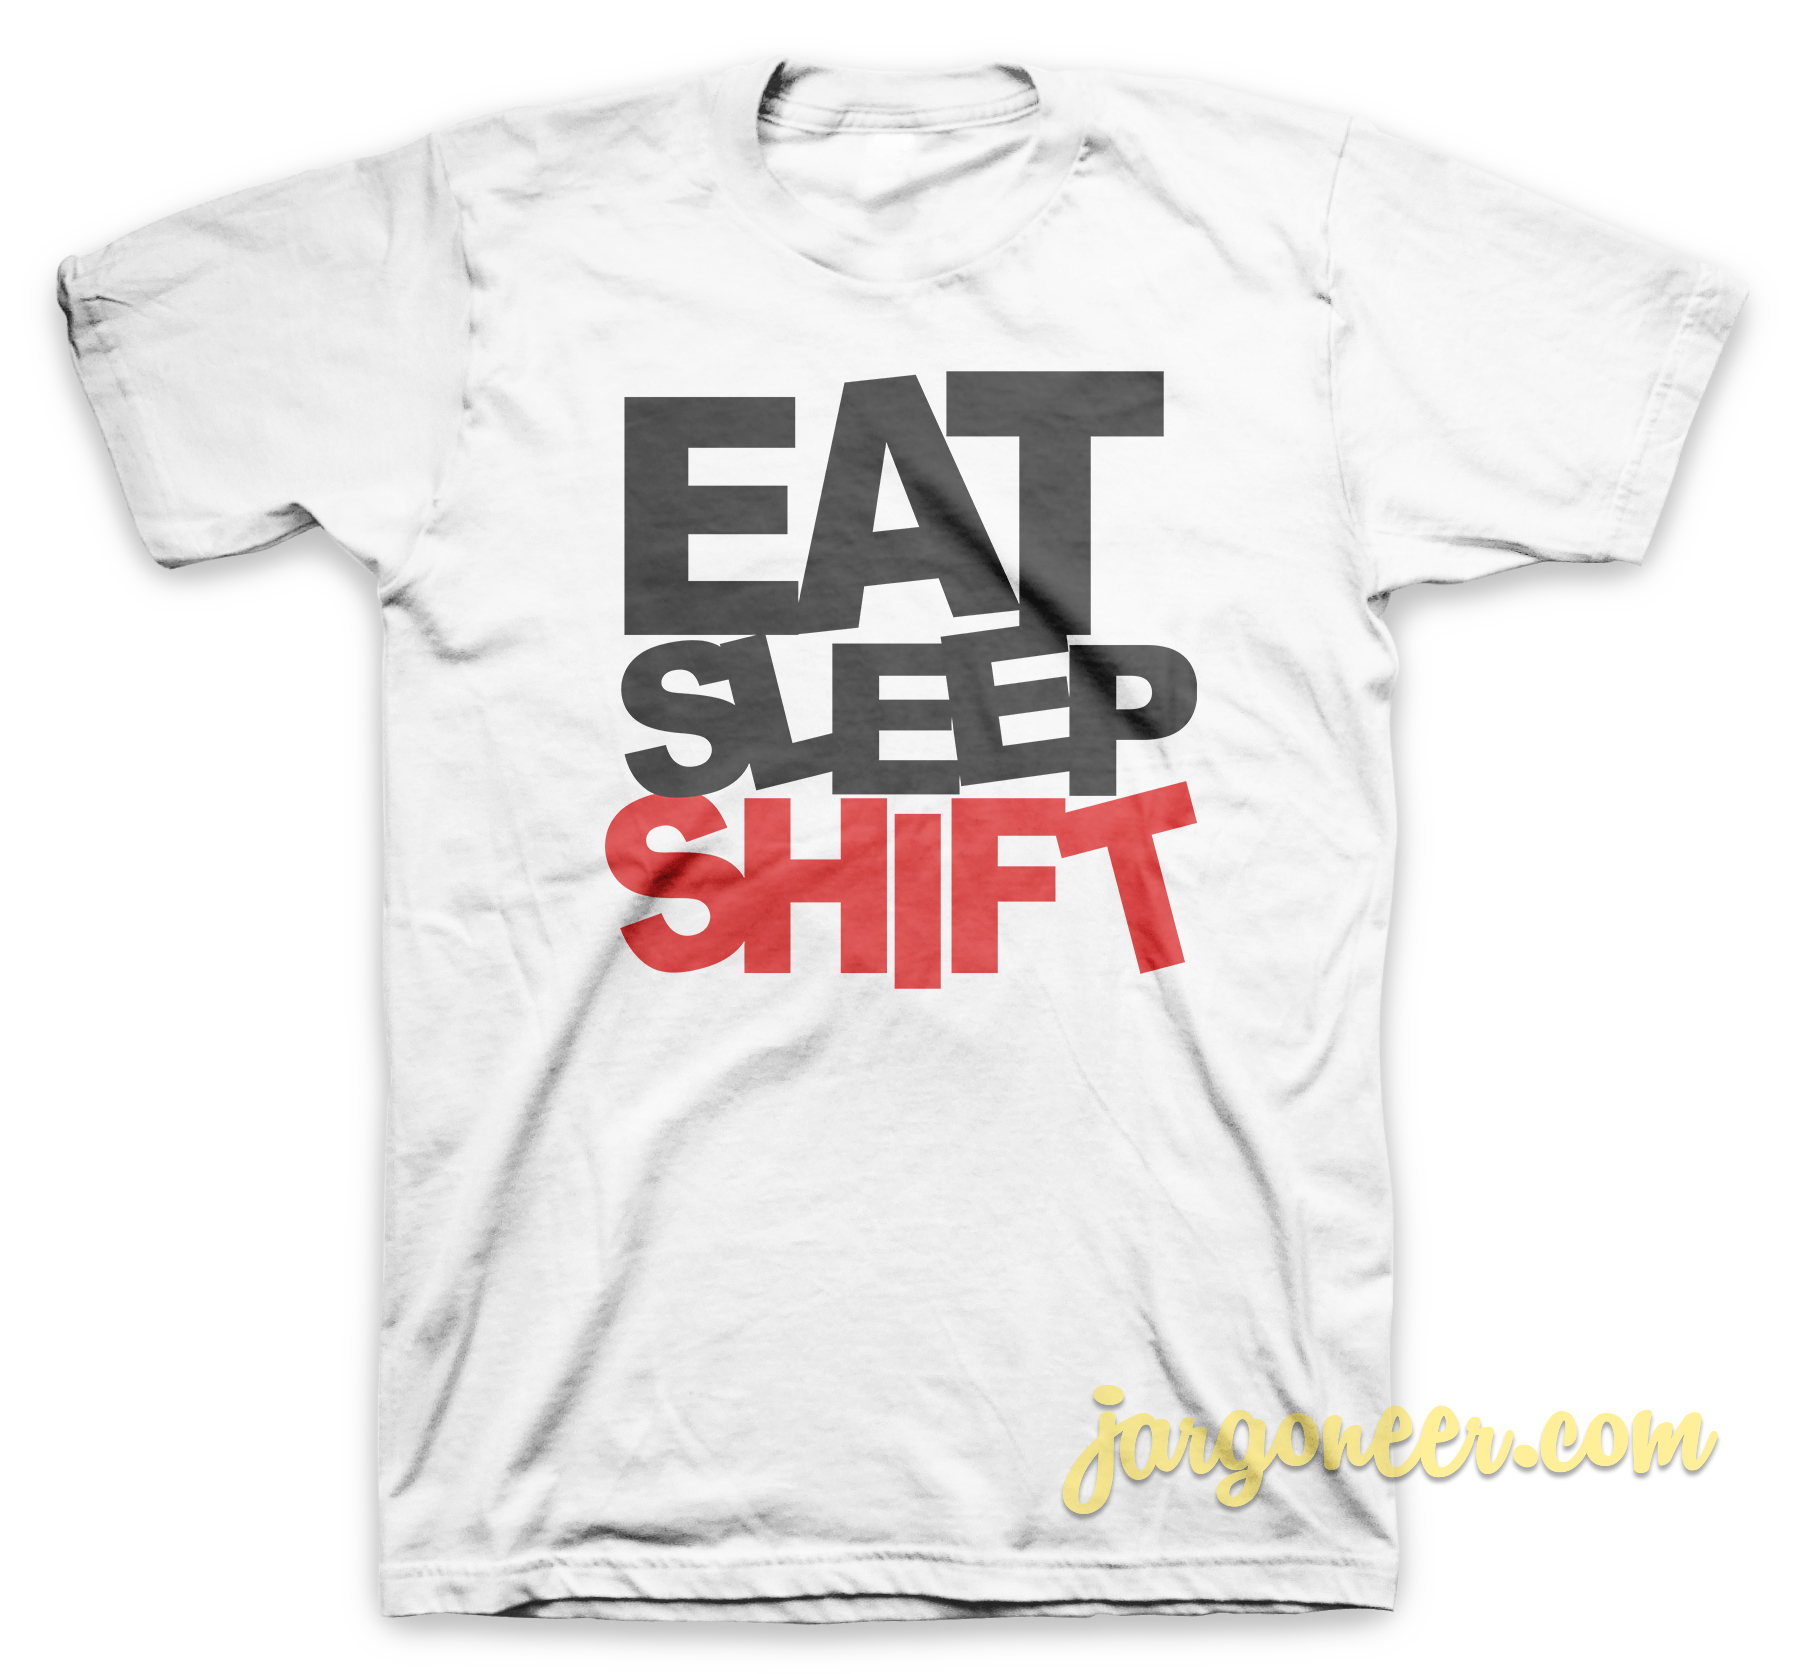 Eat Sleep Shift White T Shirt - Shop Unique Graphic Cool Shirt Designs